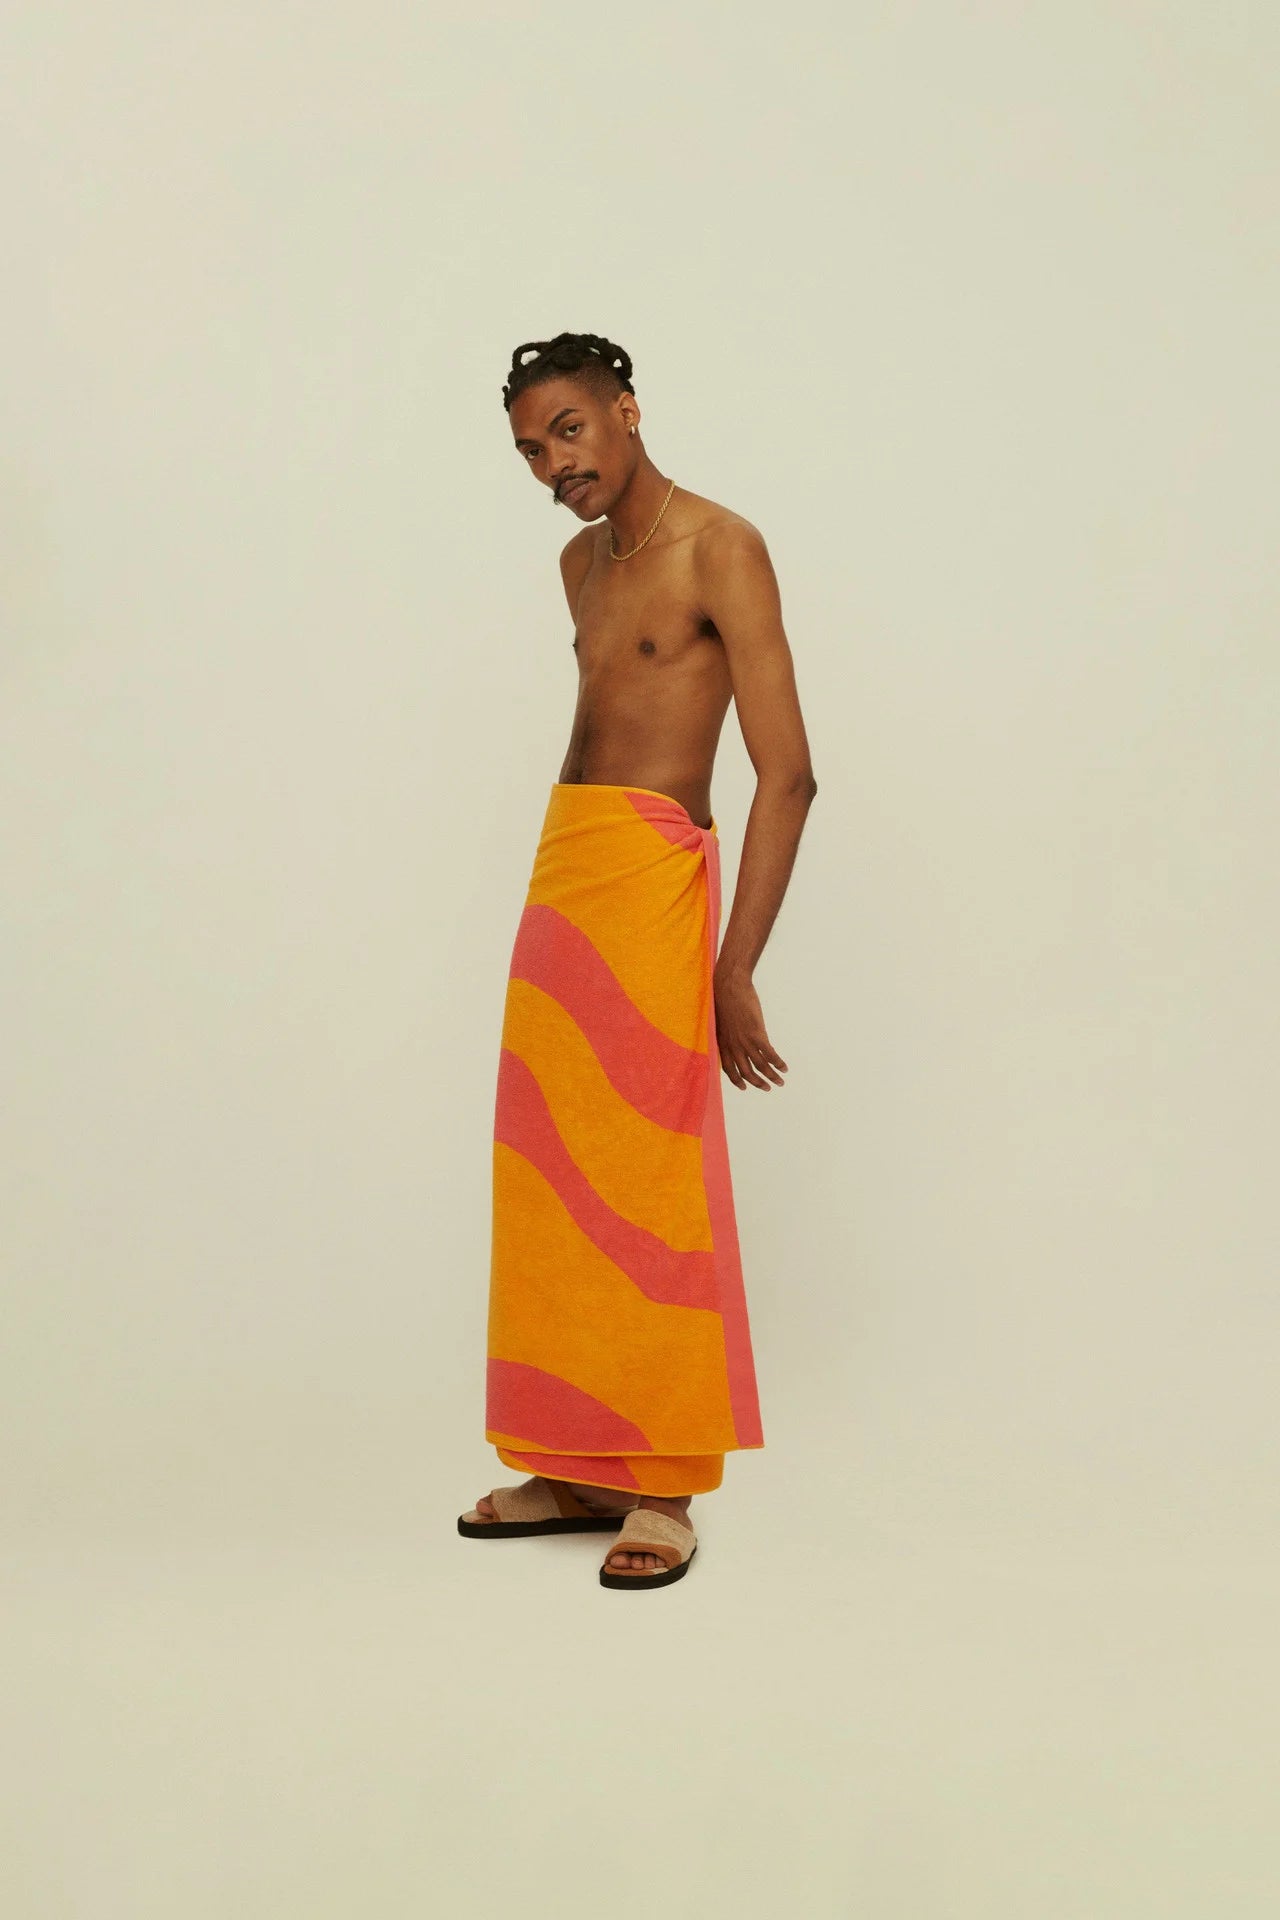 OAS Beach Towel | Pink Flow